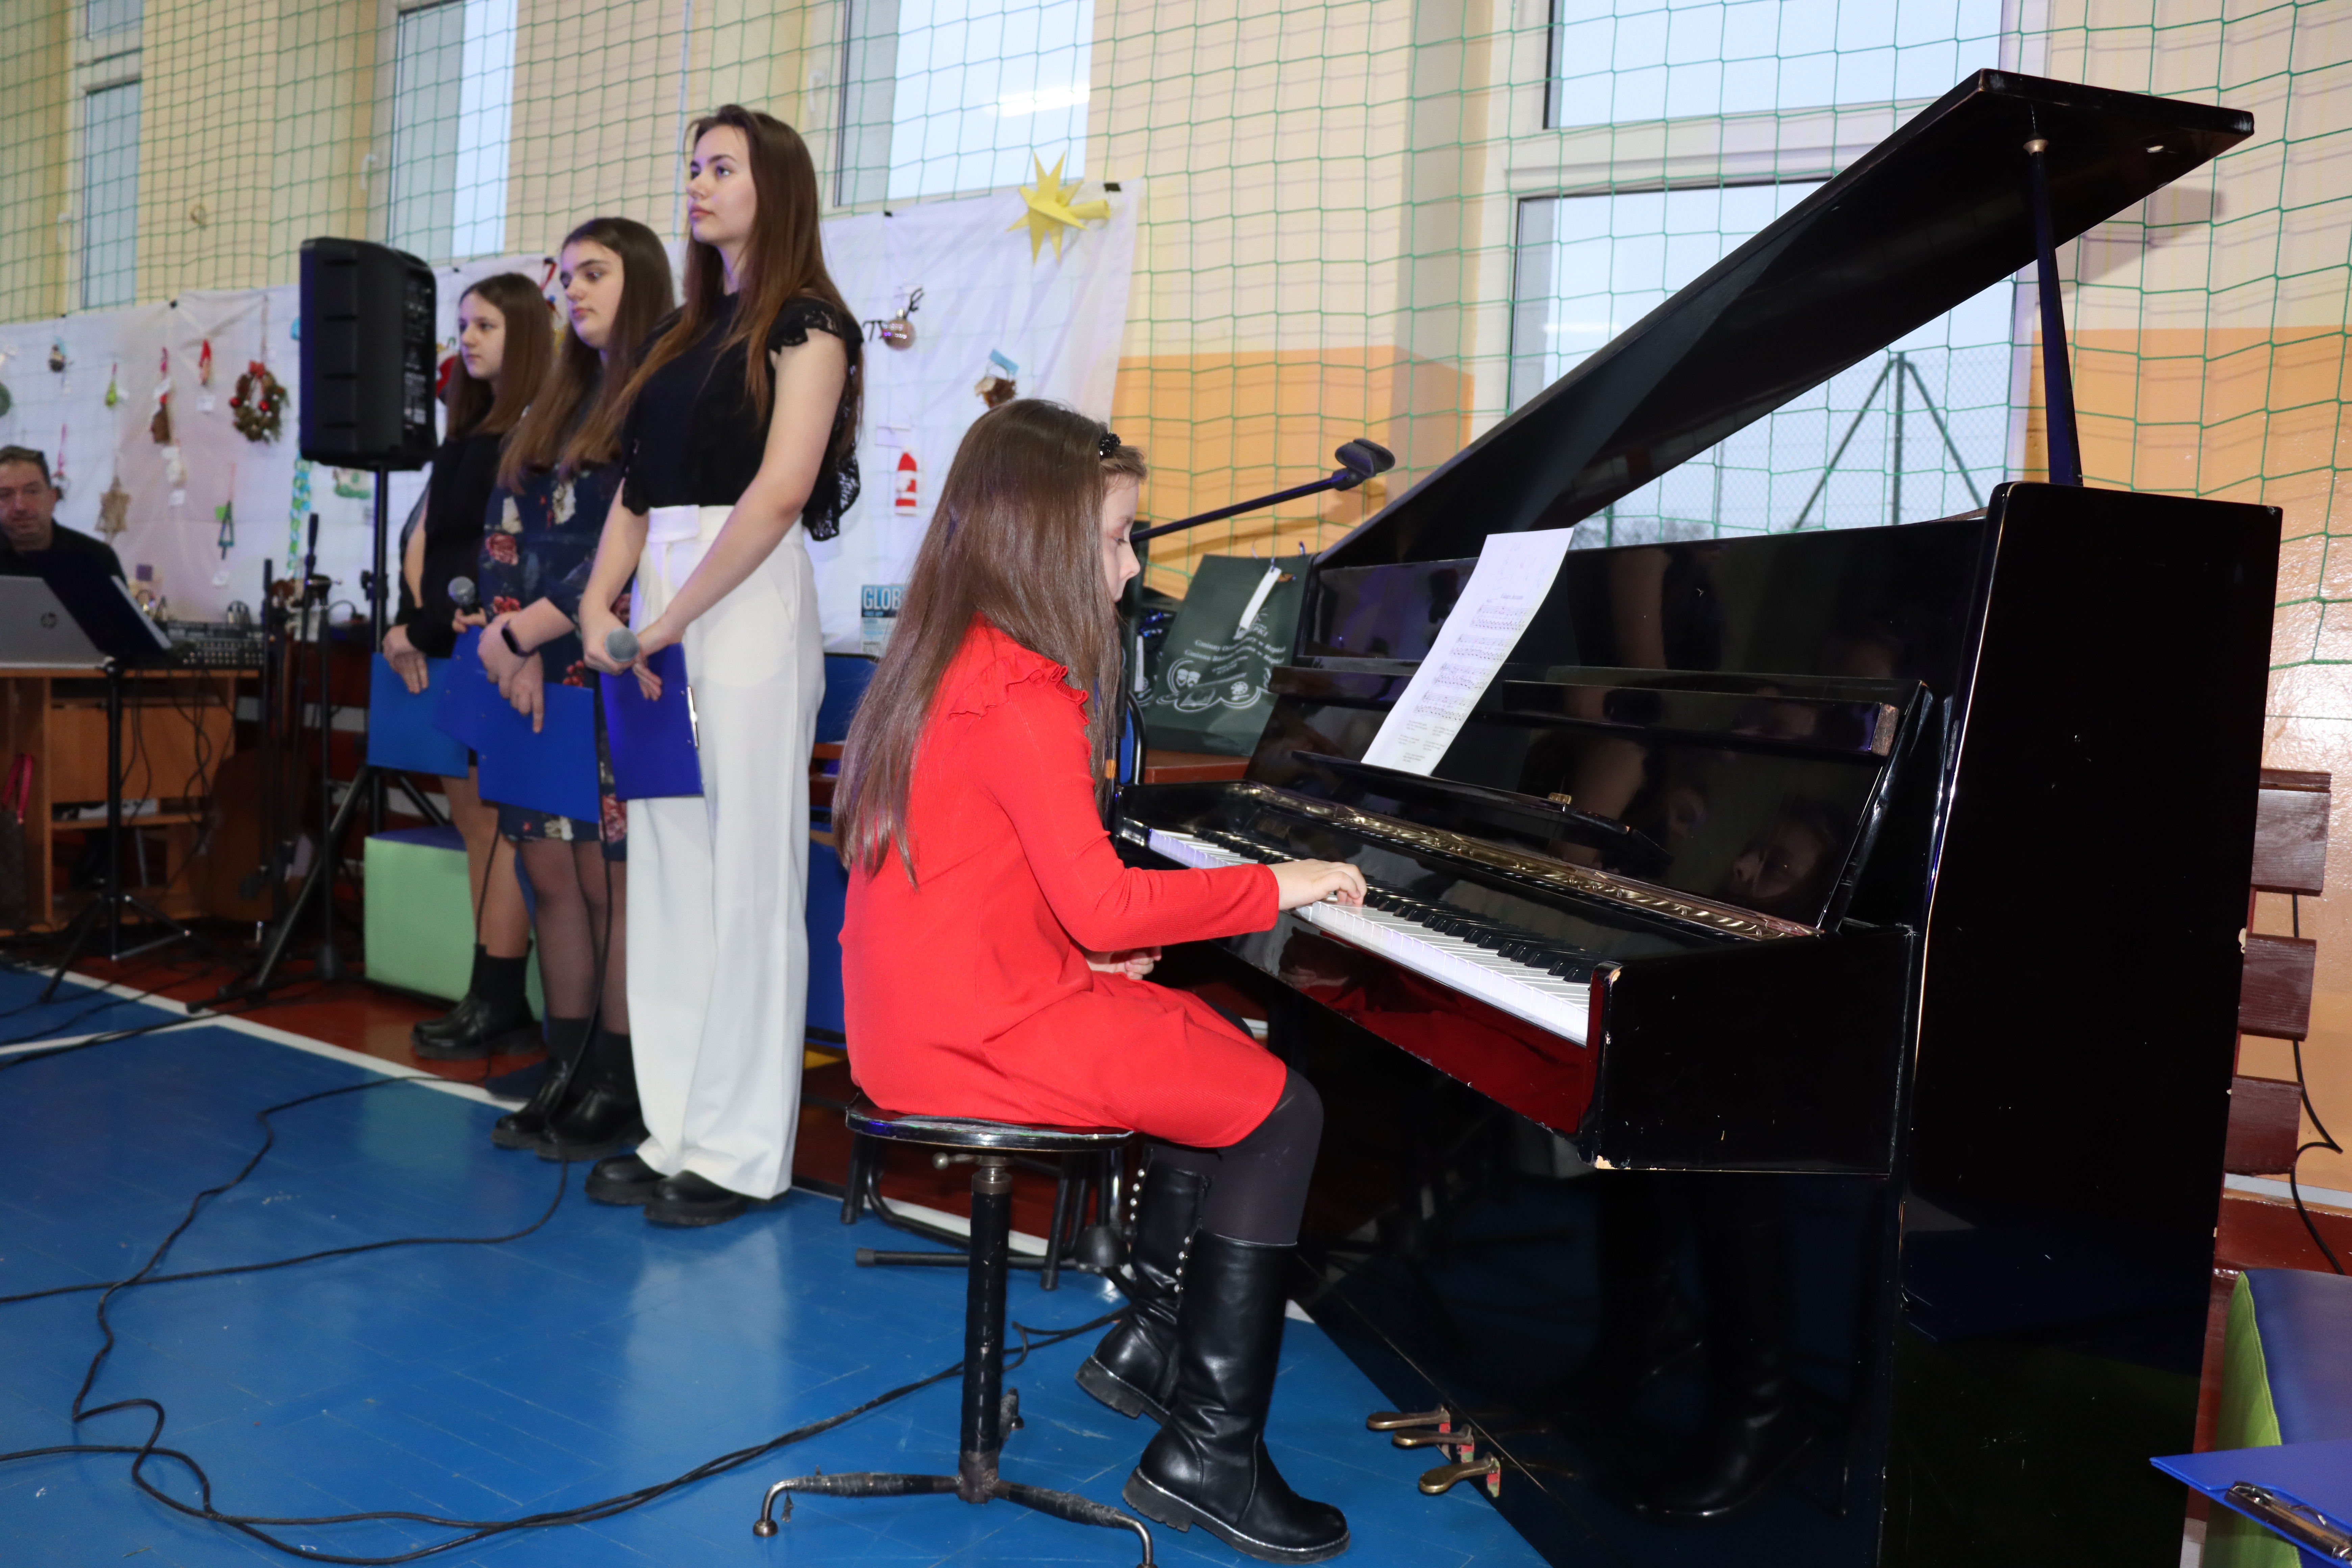 Dziewczynka w czerwonej sukience gra na pianinie jedną z kolęd, obok stoją cztery osoby, występujące w koncercie (recytujące)